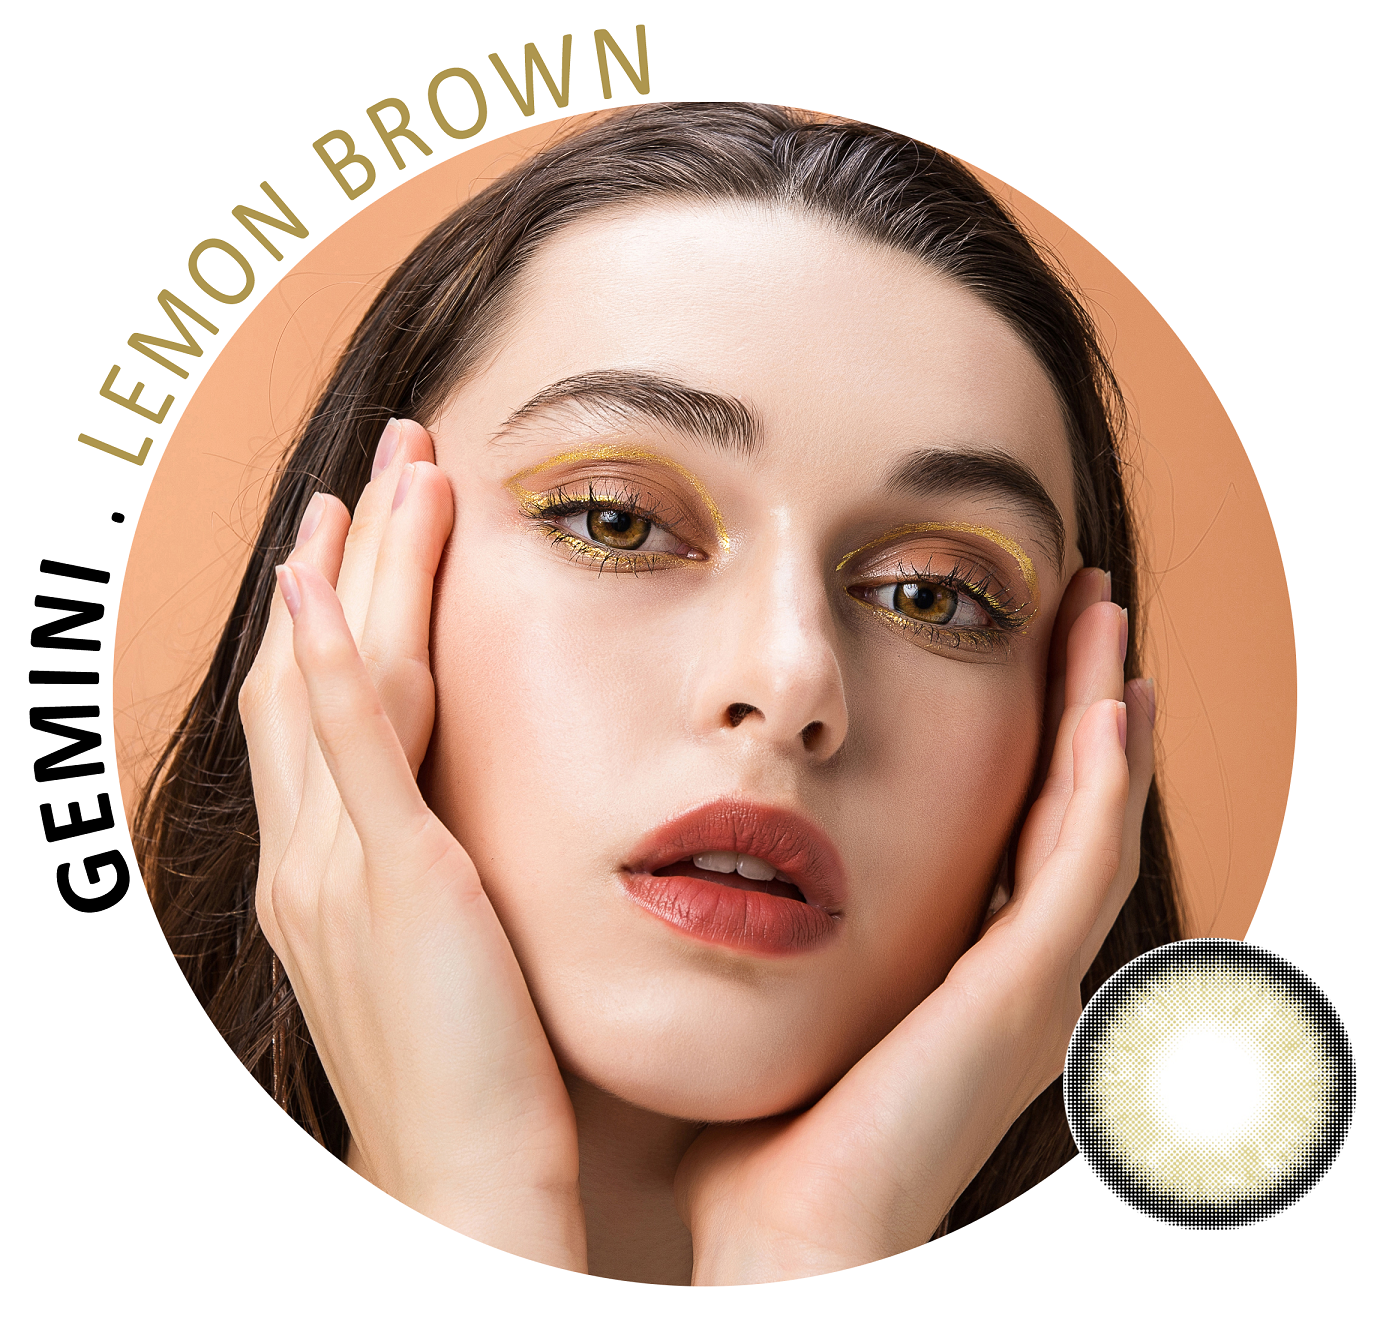 Gemini-Lemon-Brown-11.png